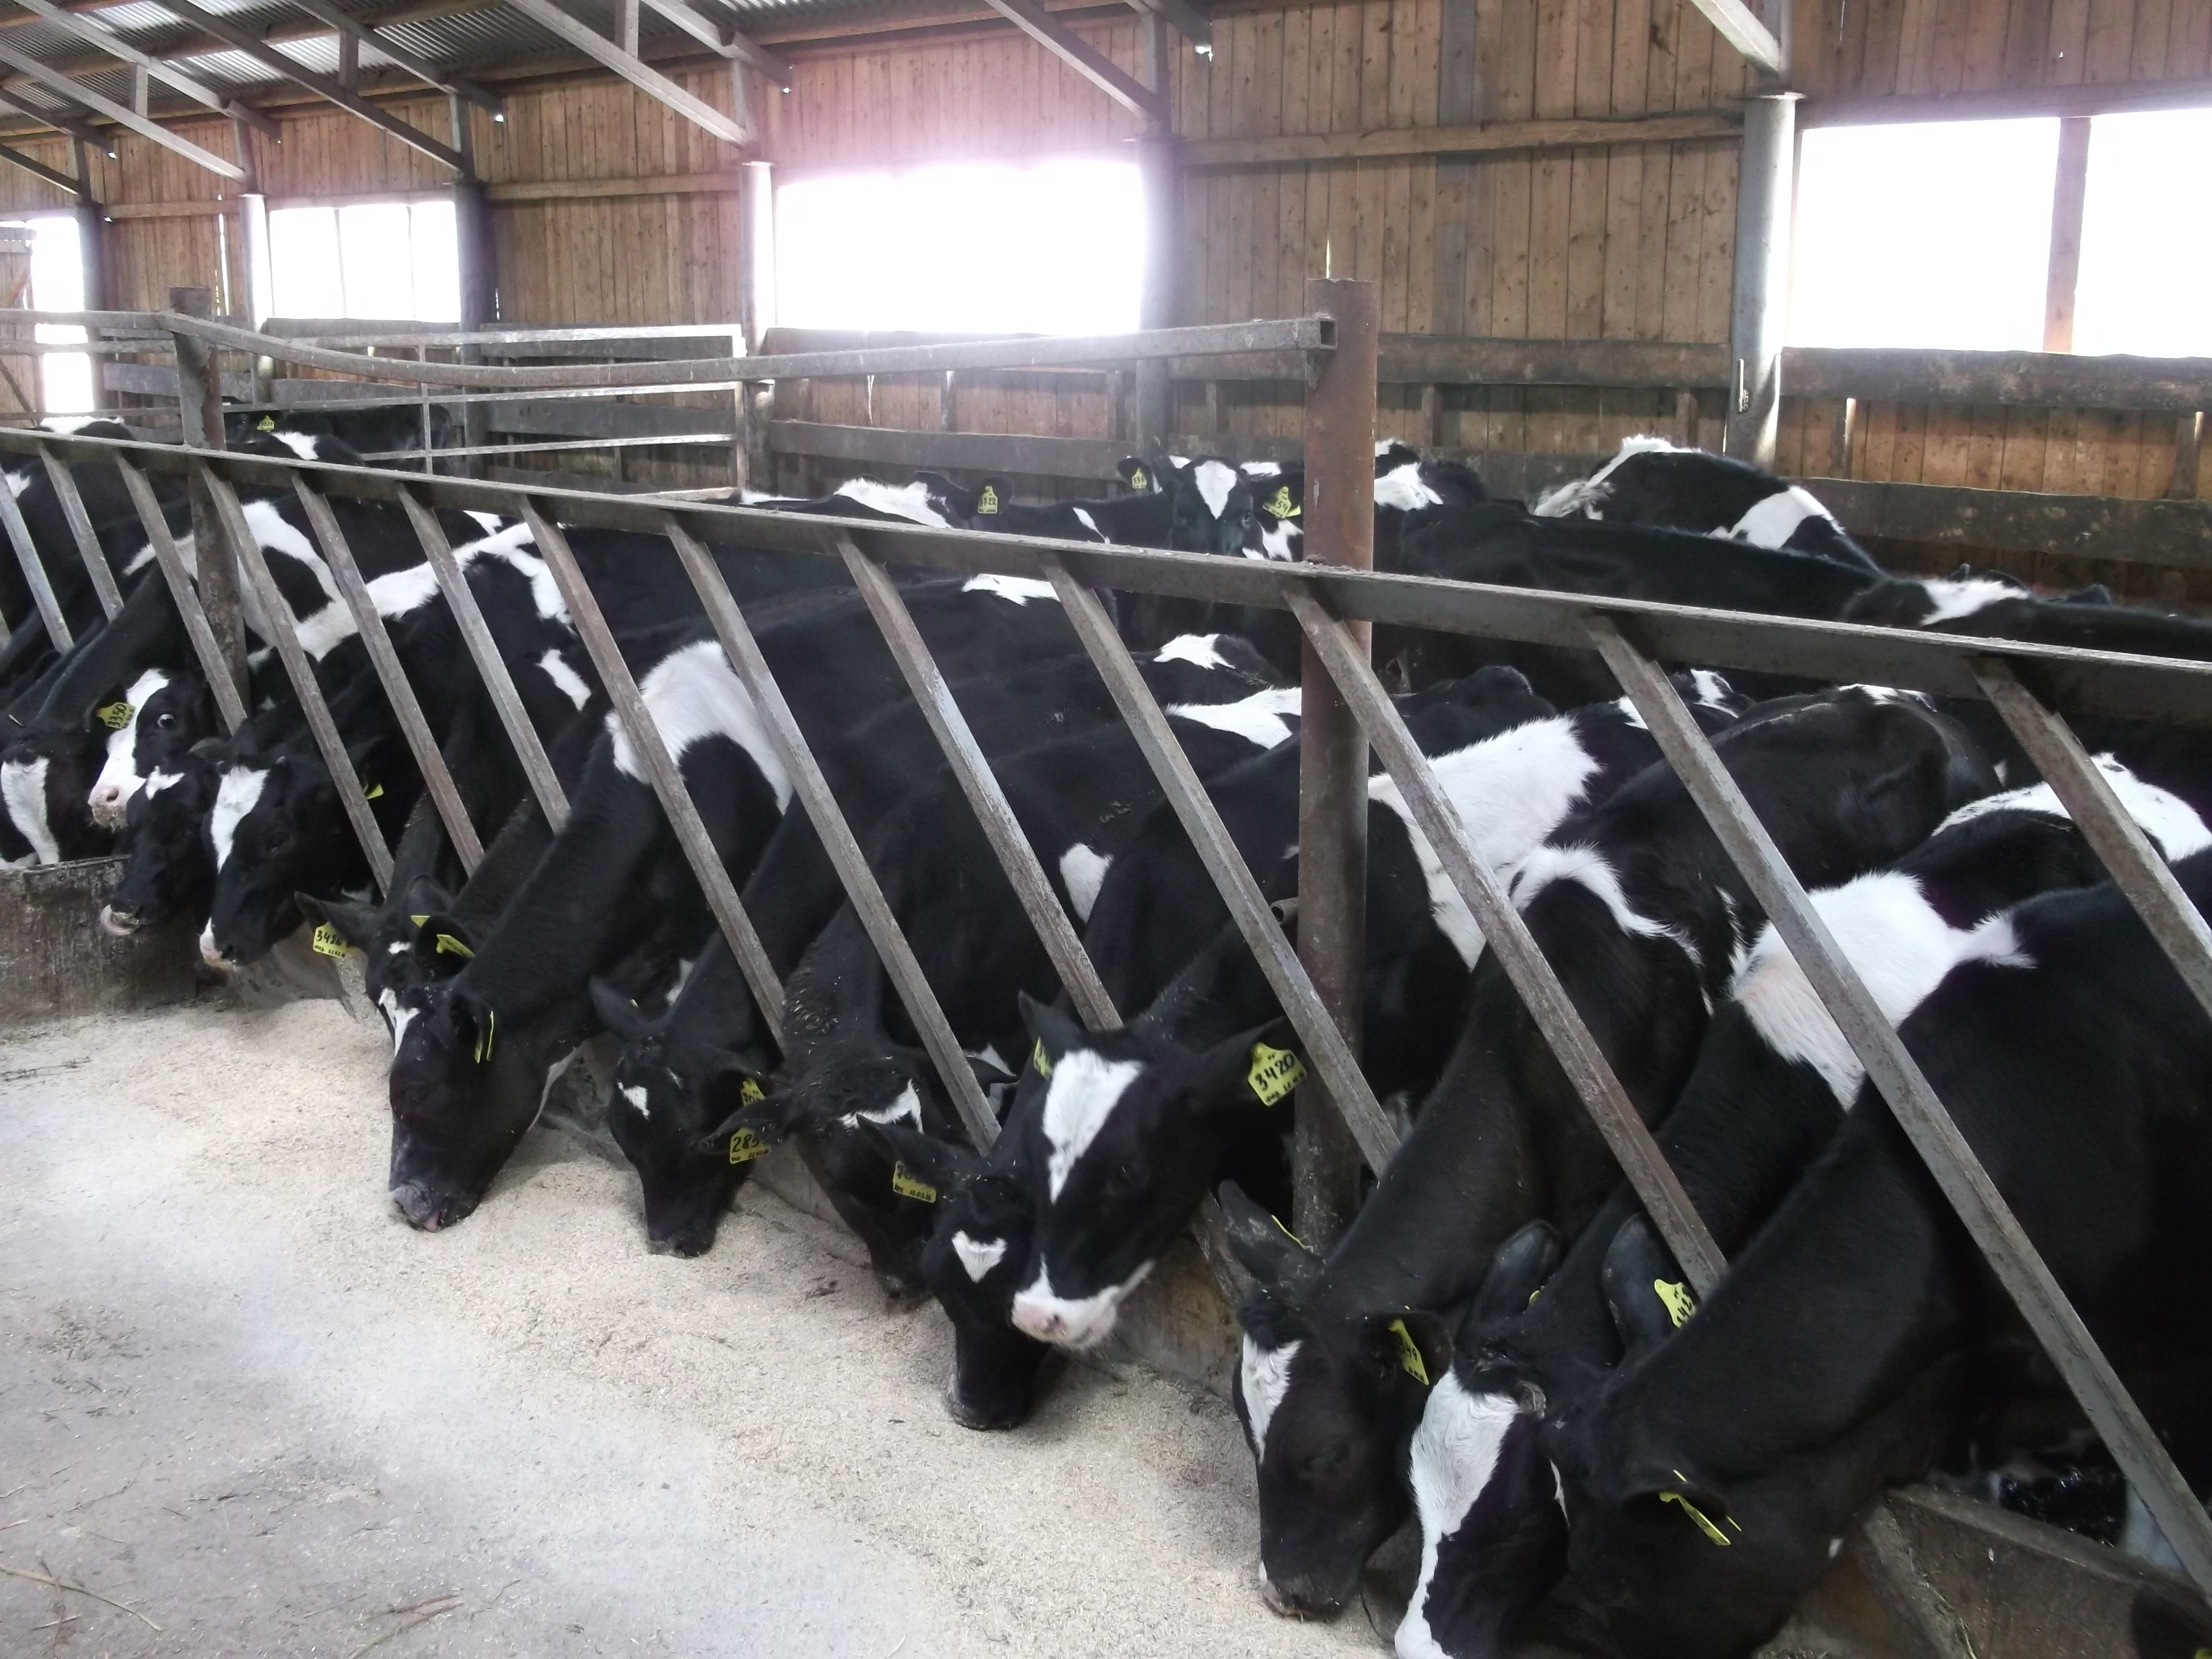 Организации по племенному животноводству предлагают молодняк крупного рогатого скота молочного и мясного направлений продуктивности